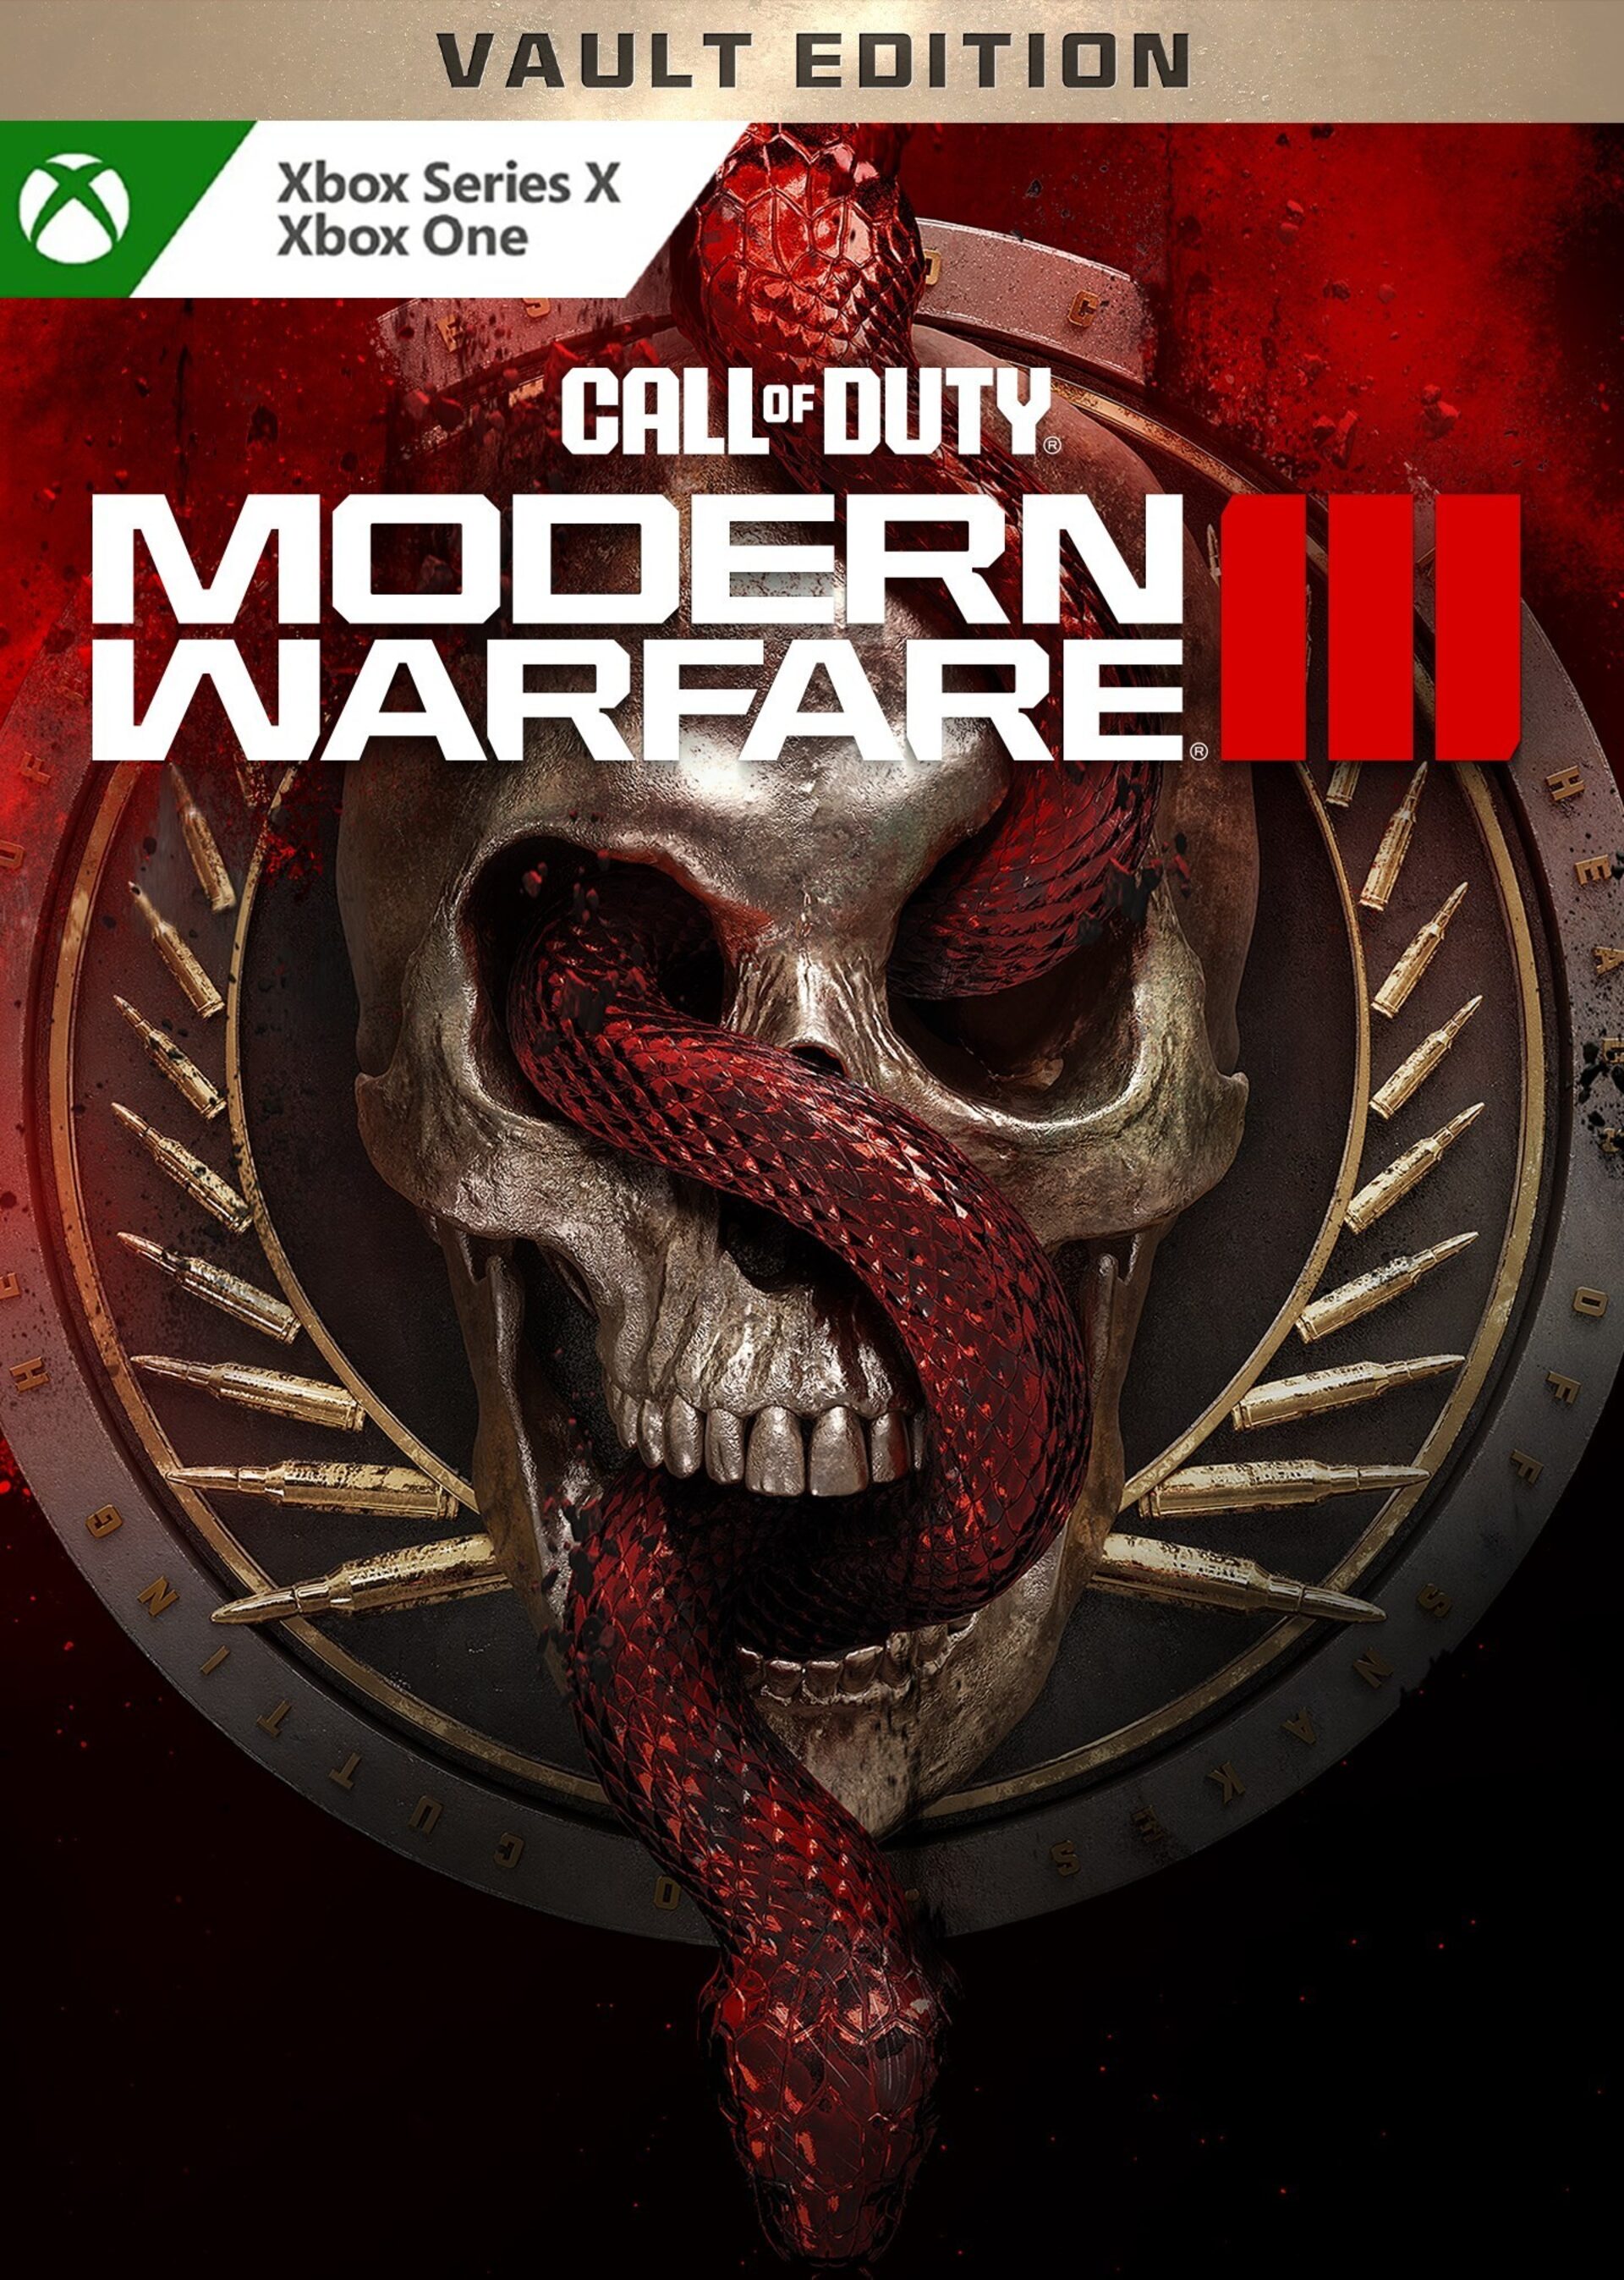 Compre Call of Duty: Advanced Warfare Digital Pro Edition Xbox Live Xbox  One Key UNITED STATES - Barato - !